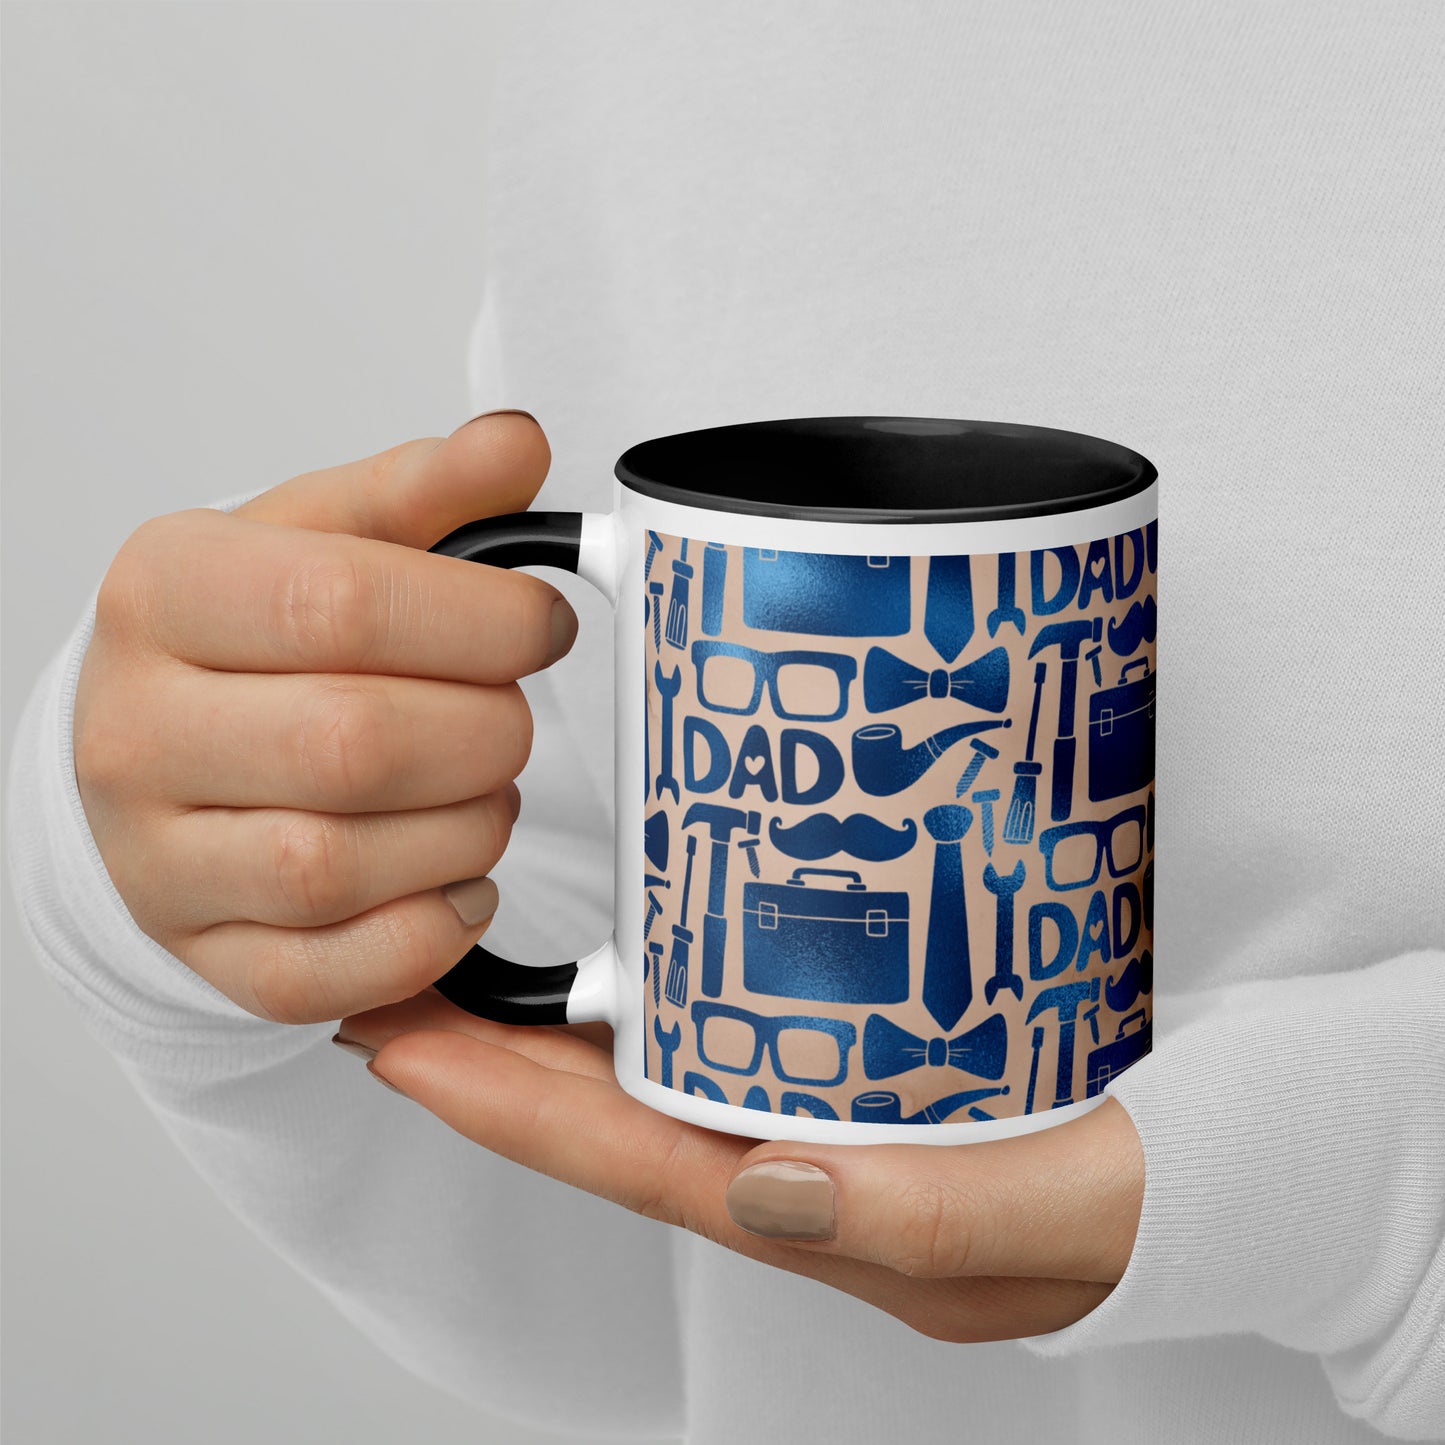 Dad's Cup